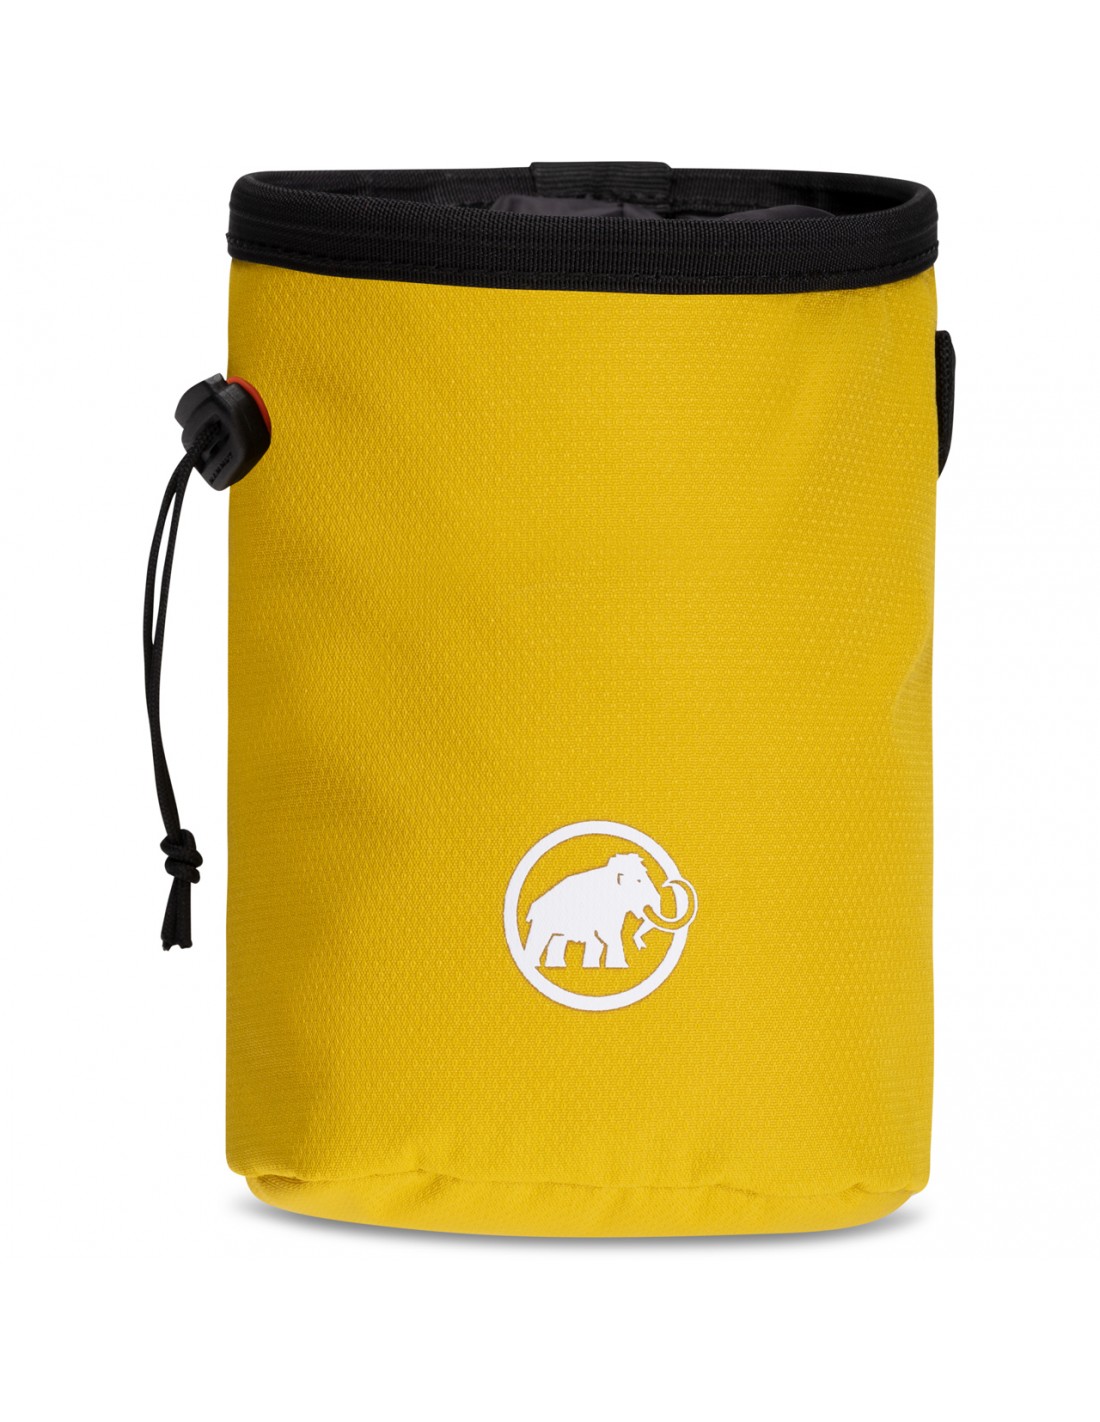 Mammut Gym Basic Chalk Bag, mello Chalkbag Verwendung - Klettern, Chalkbag Farbe - Gelb, von Mammut